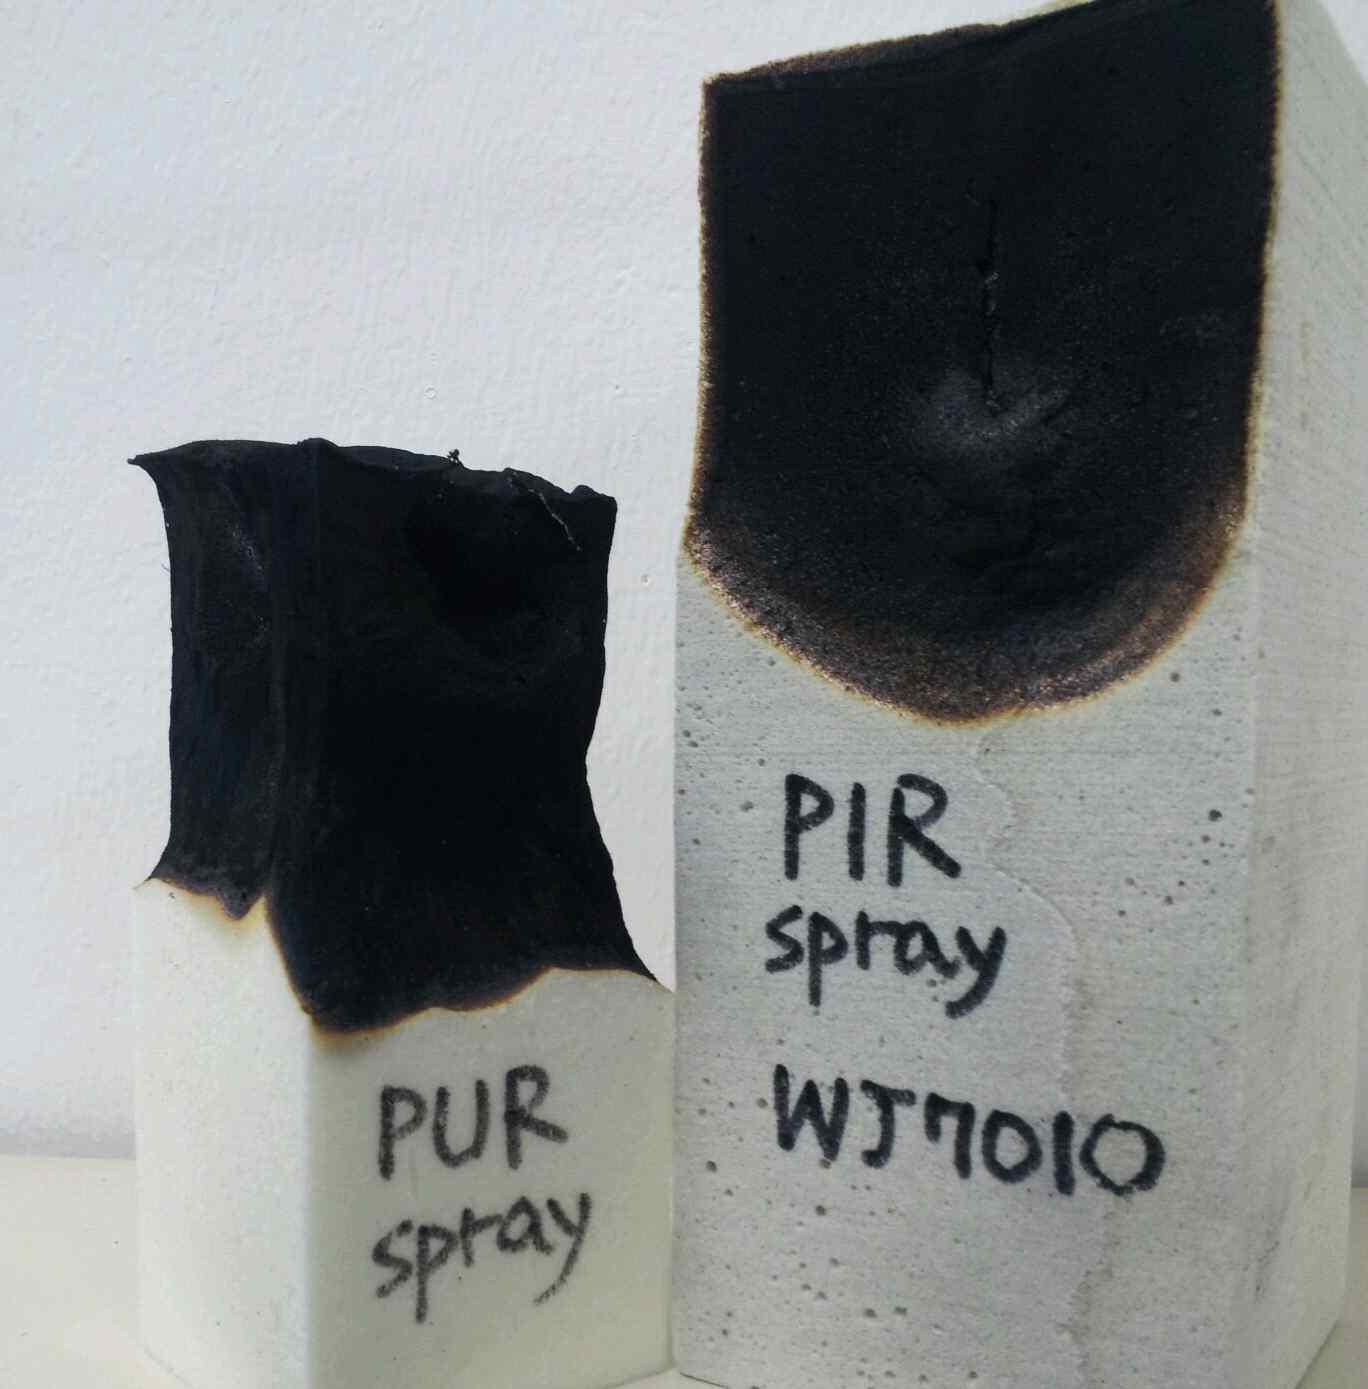 기존 spray foam(좌) 과 본 연구 개발 spray foam(우) 화염 실험